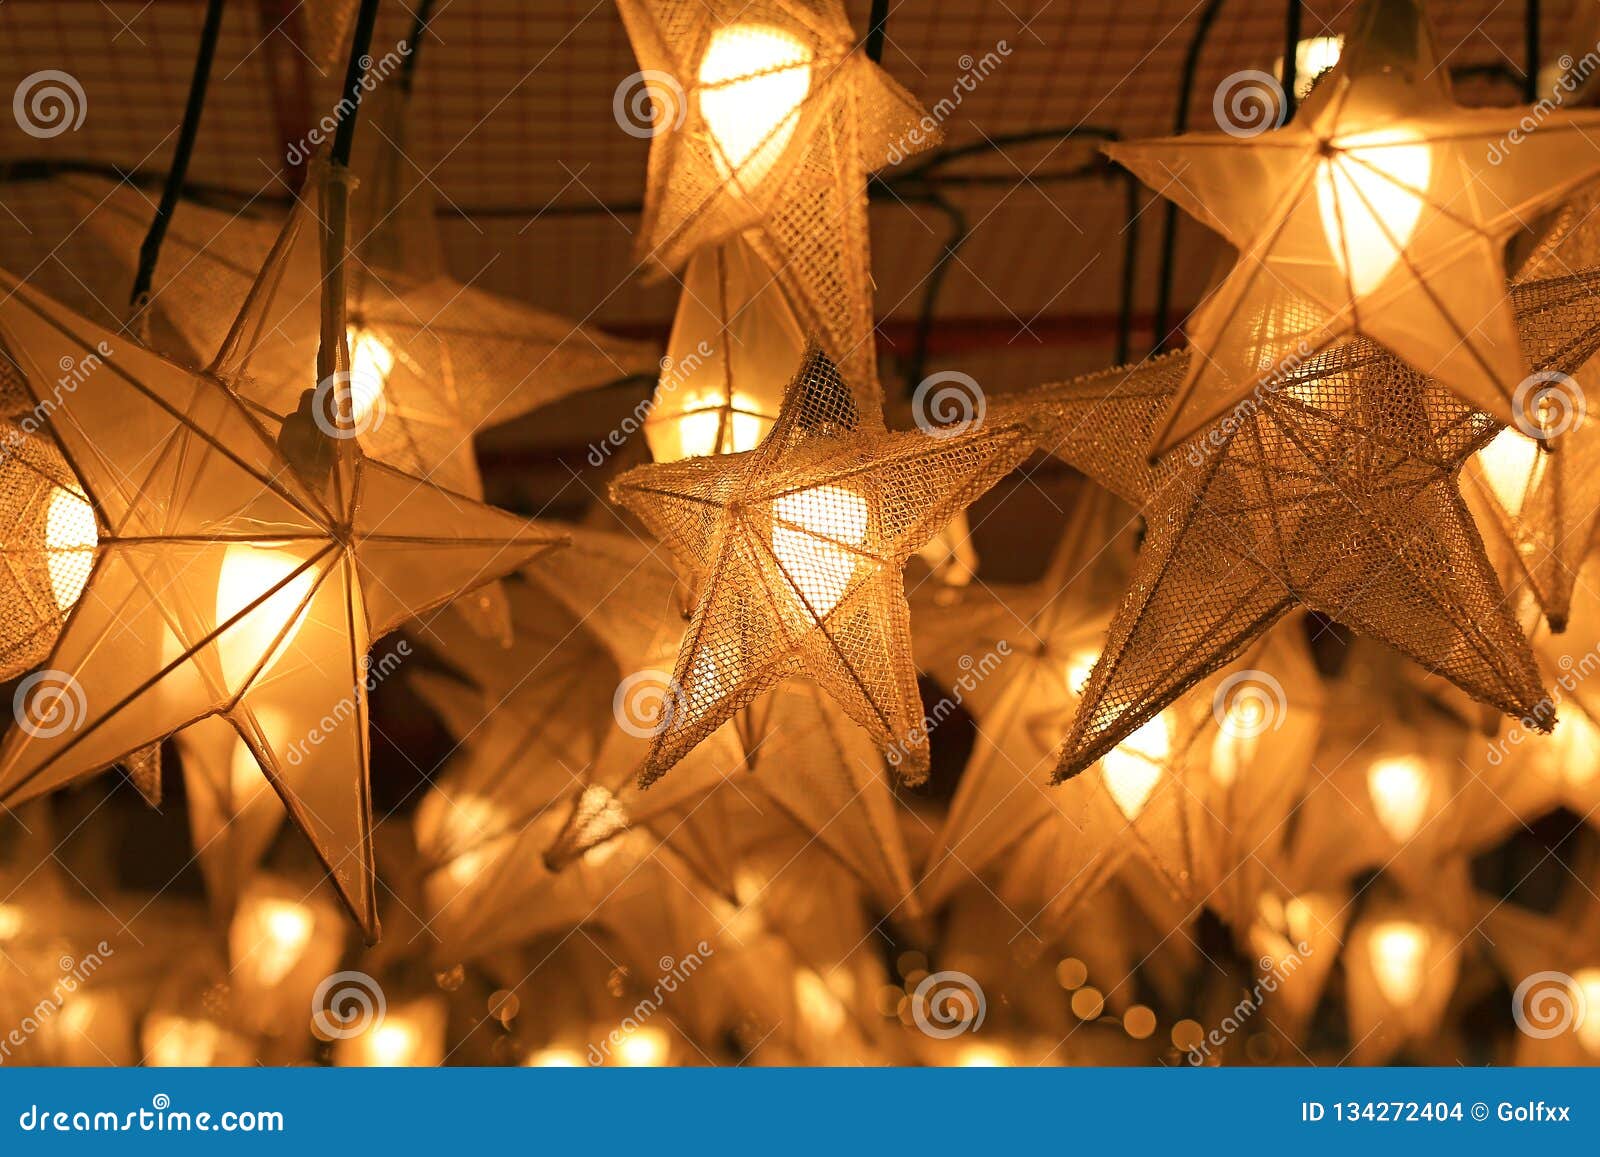 Star Lantern Lights Hanging During Holiday Season Stock